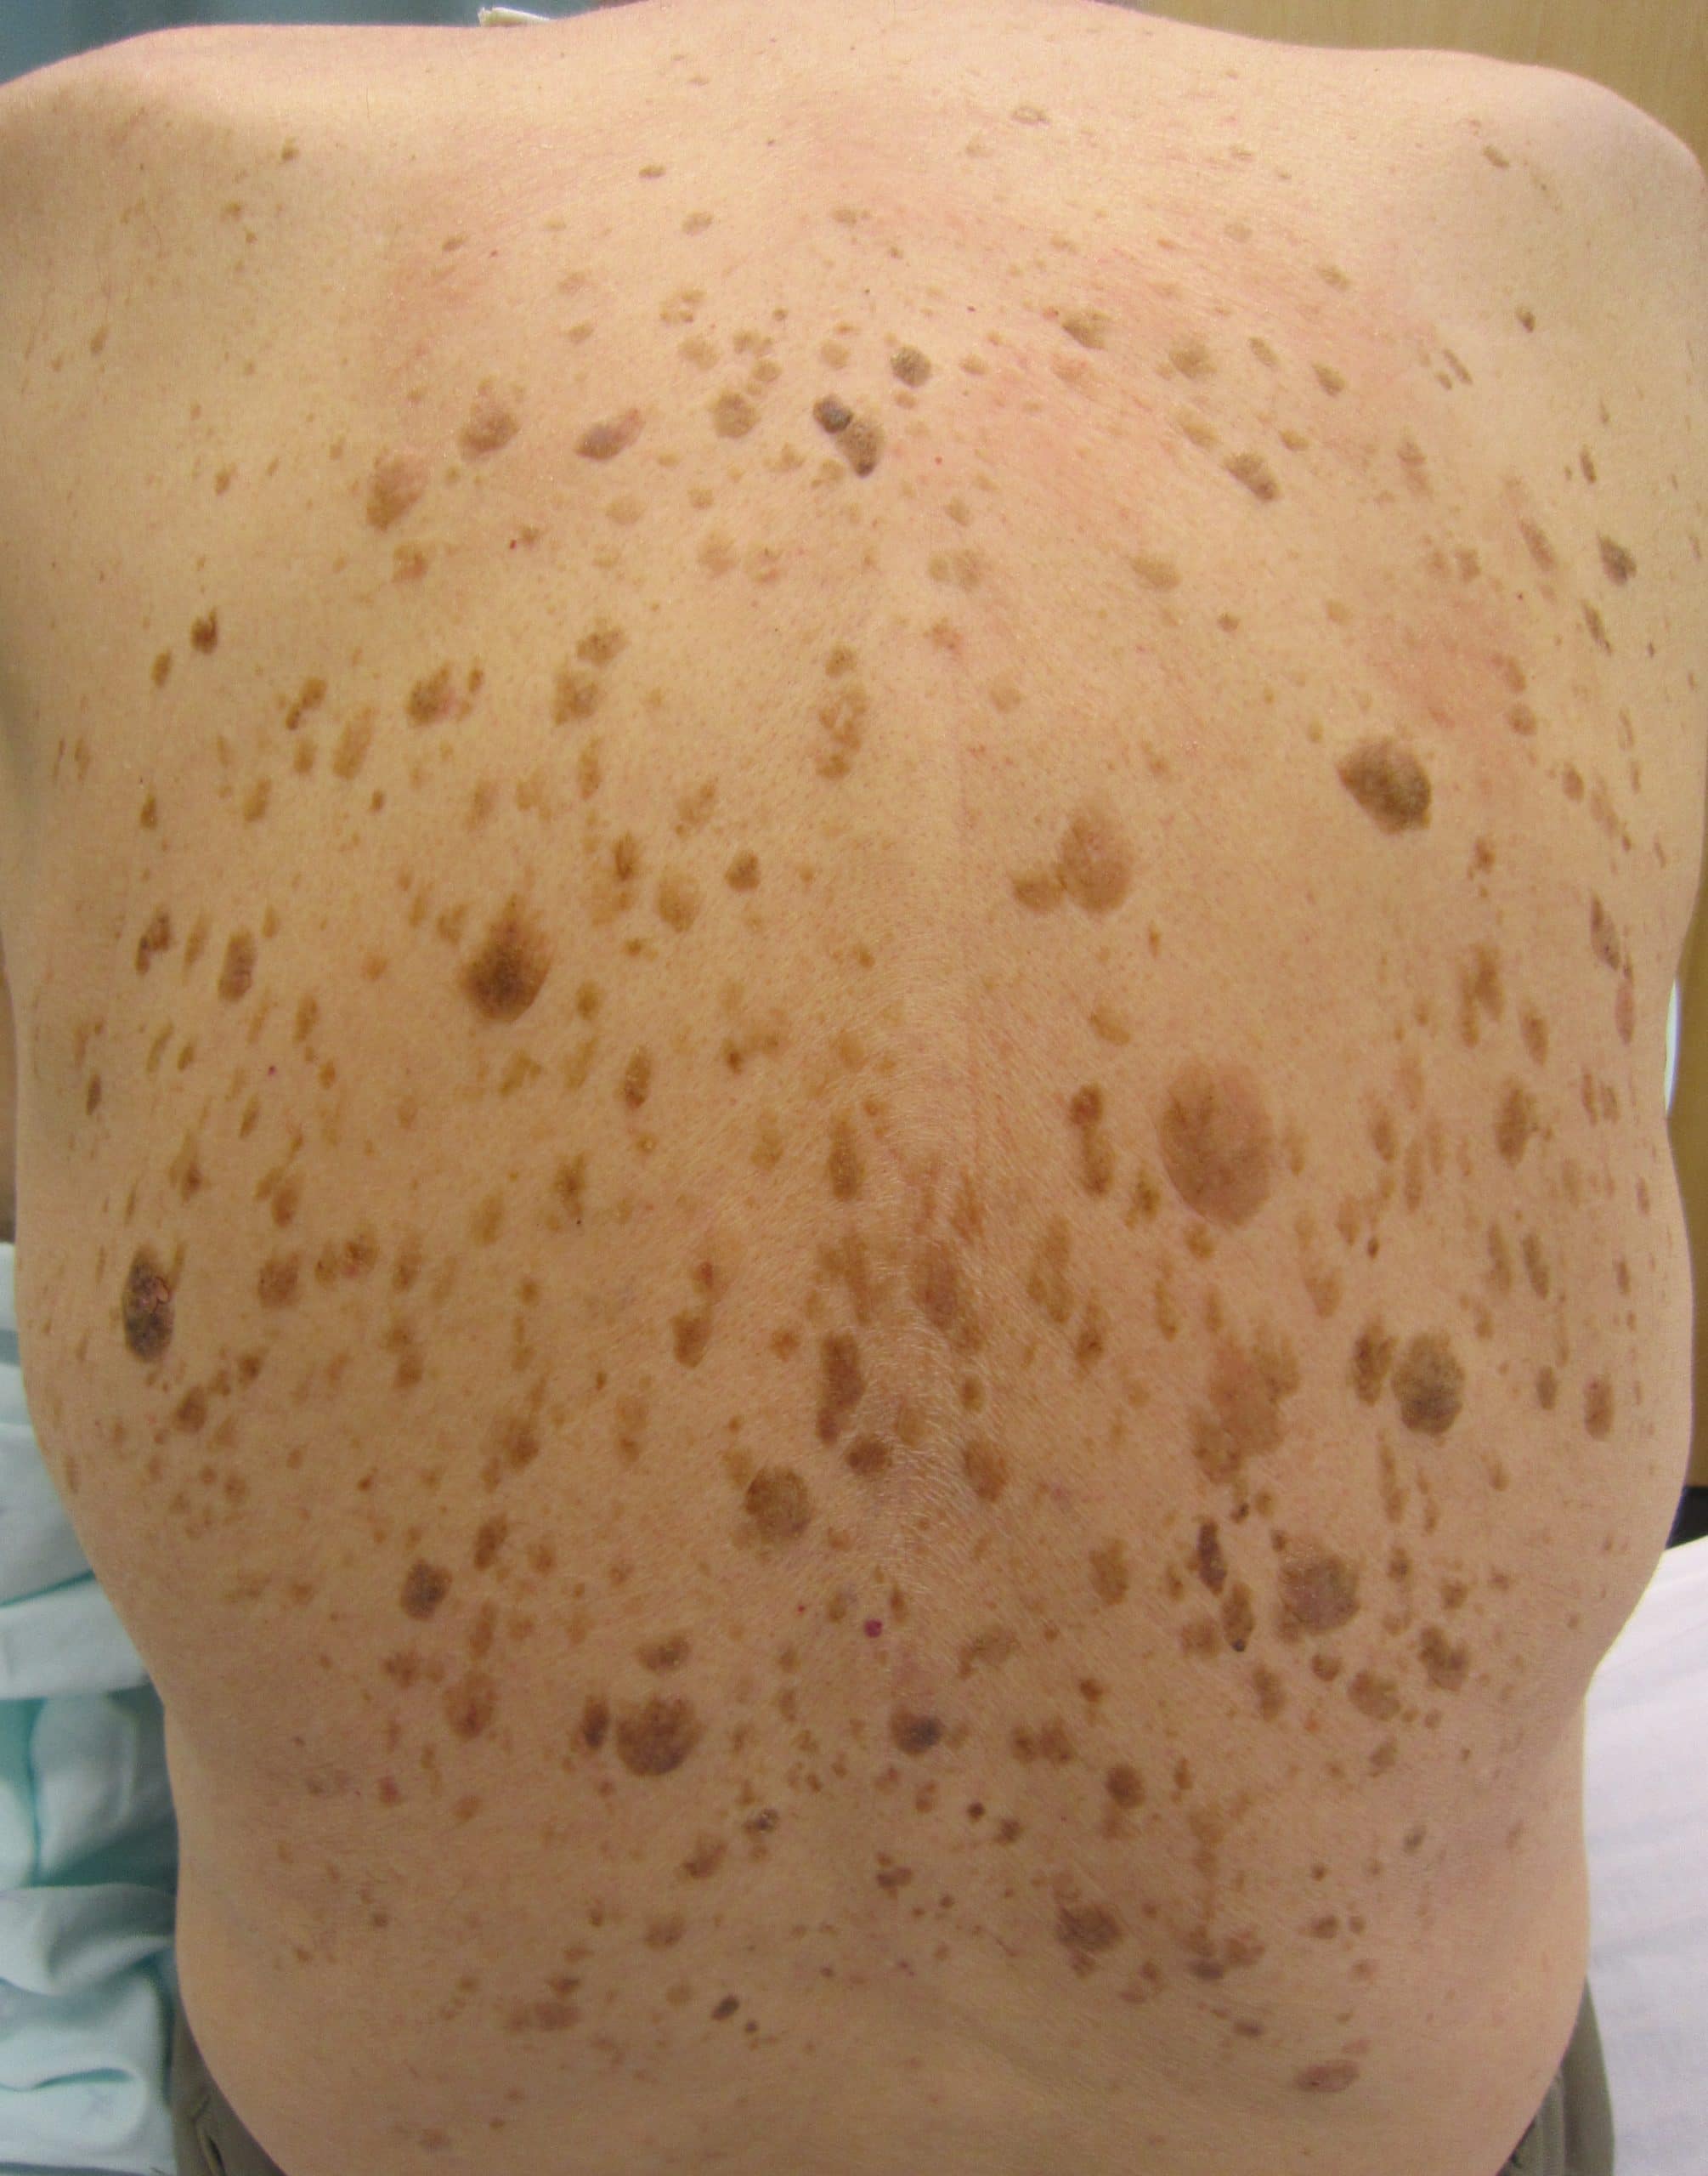 Veel seborroïsche keratosen op de rug van een persoon met het teken van Leser-Trélat als gevolg van darmkanker